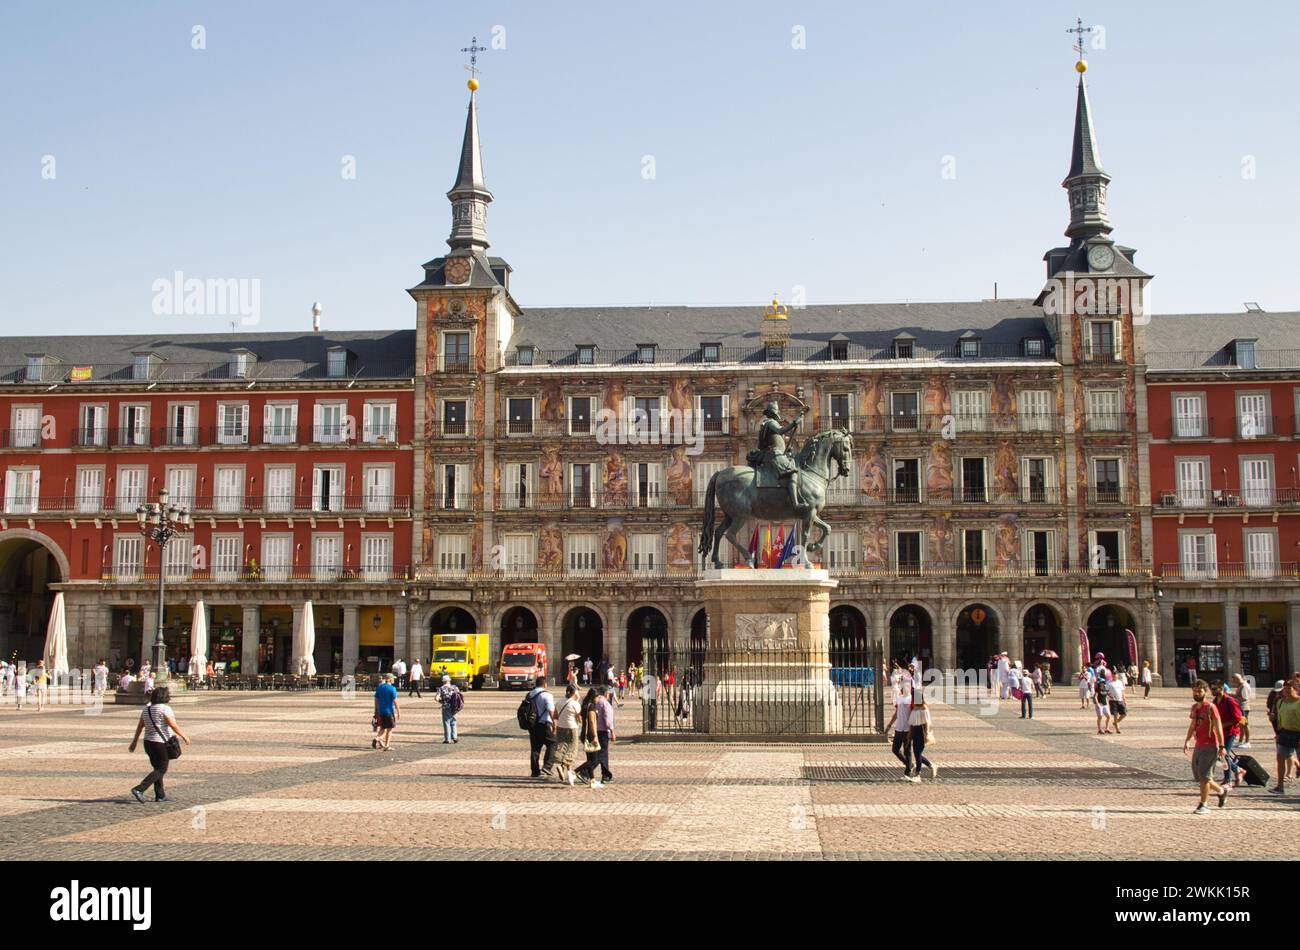 Madrid, Spanien - 27. Juni 2018: Ein Blick auf einen beliebten Plaza Mayor, auch bekannt als Madrid Central Square in Madrid, Spanien Stockfoto